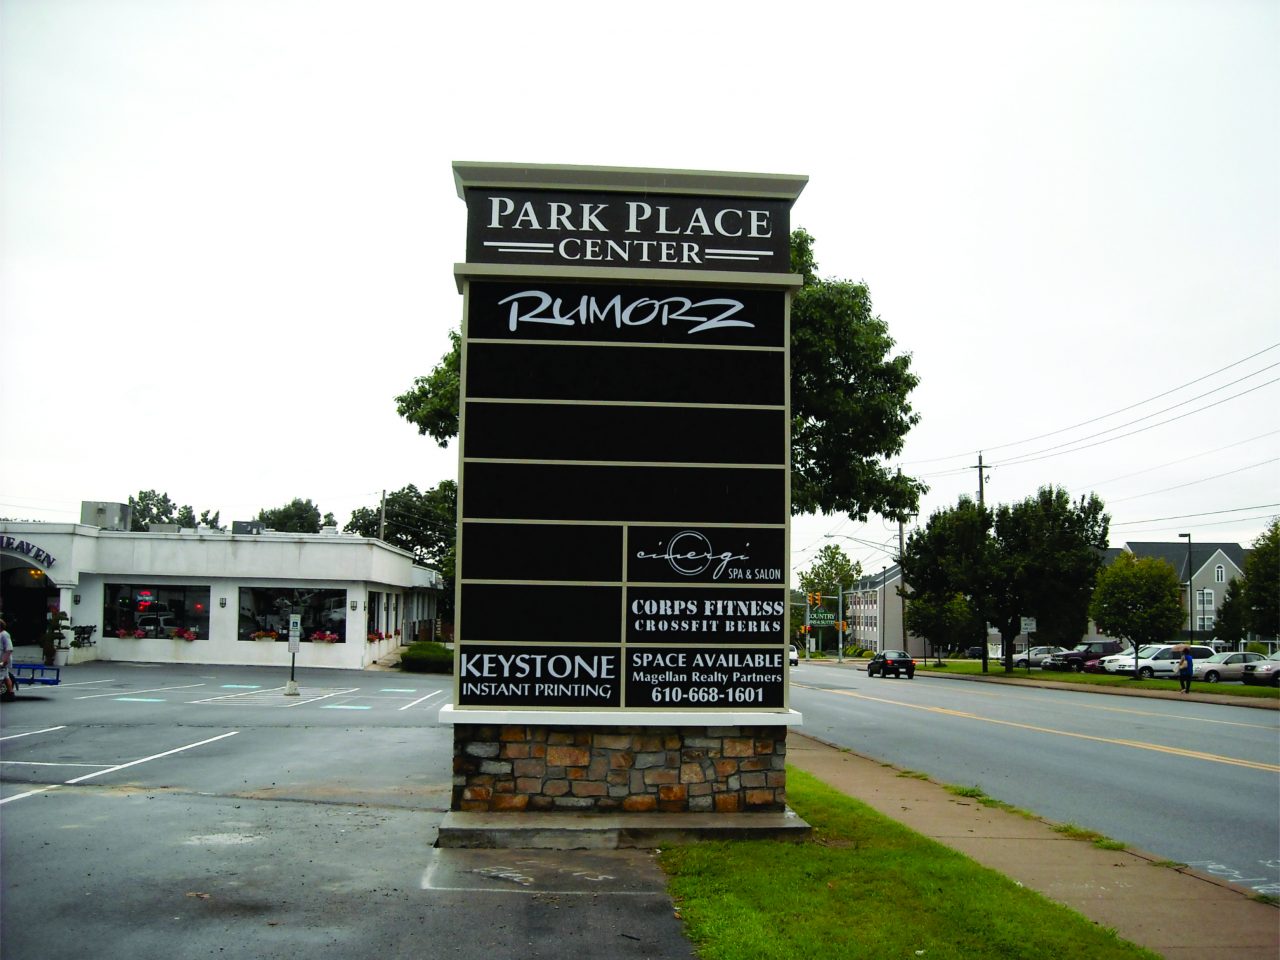 Park Place monument